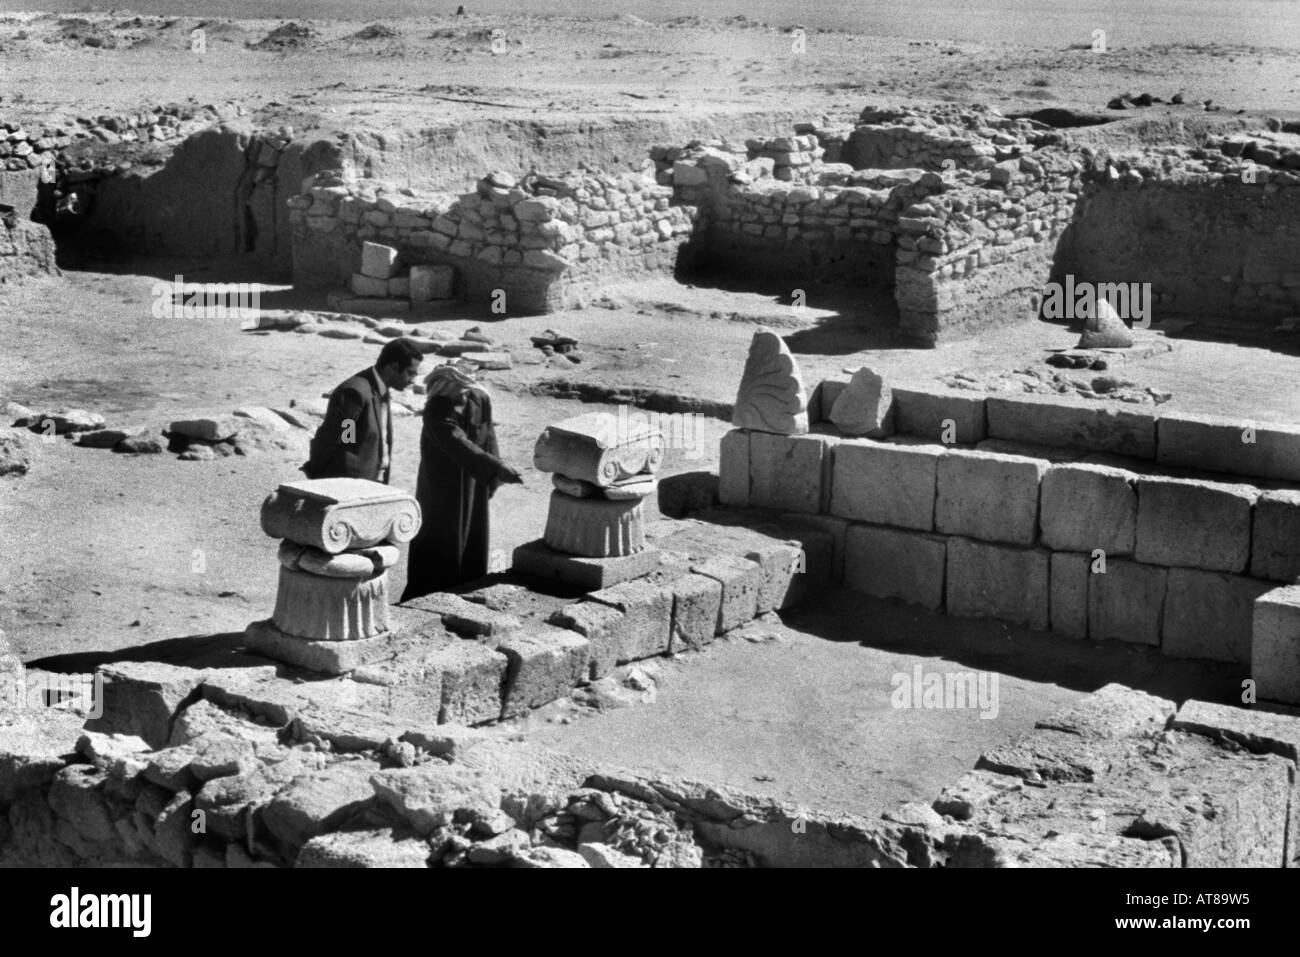 Kuwait archäologische Ausgrabungen auf Failaka Island vor Irak-Invasion Stockfoto